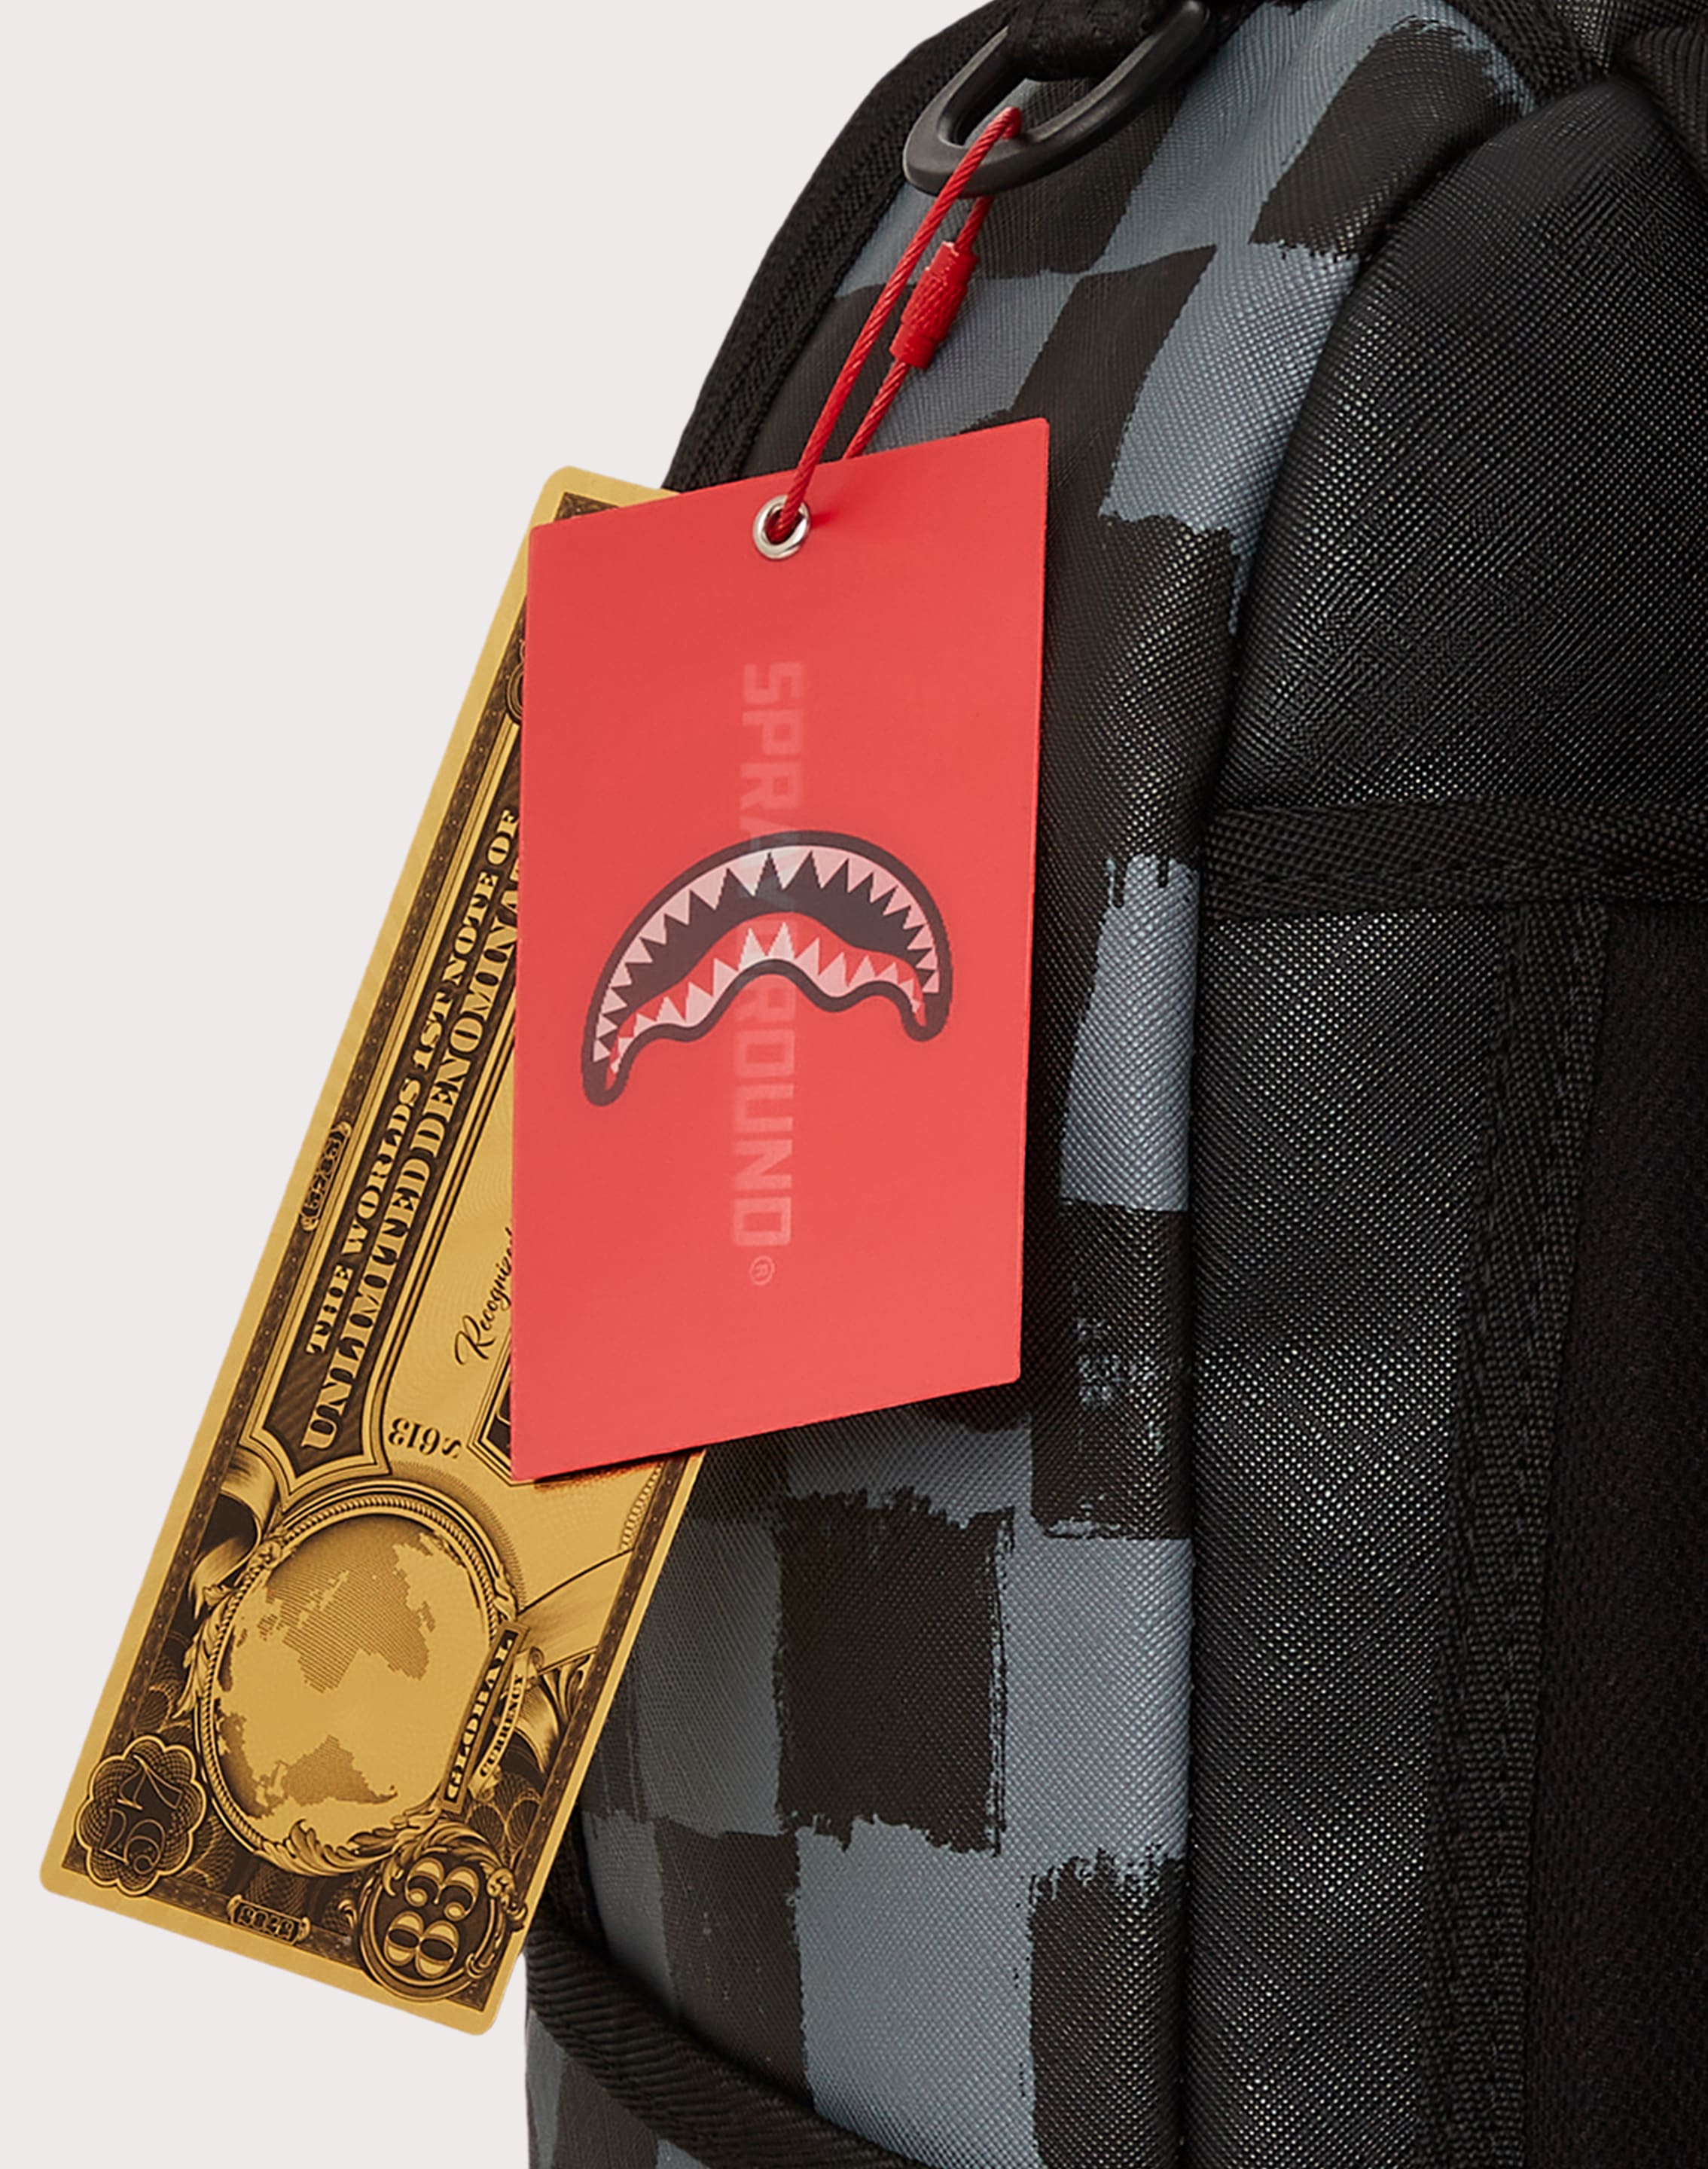 Sprayground Shark Bite Bear Backpack – DTLR